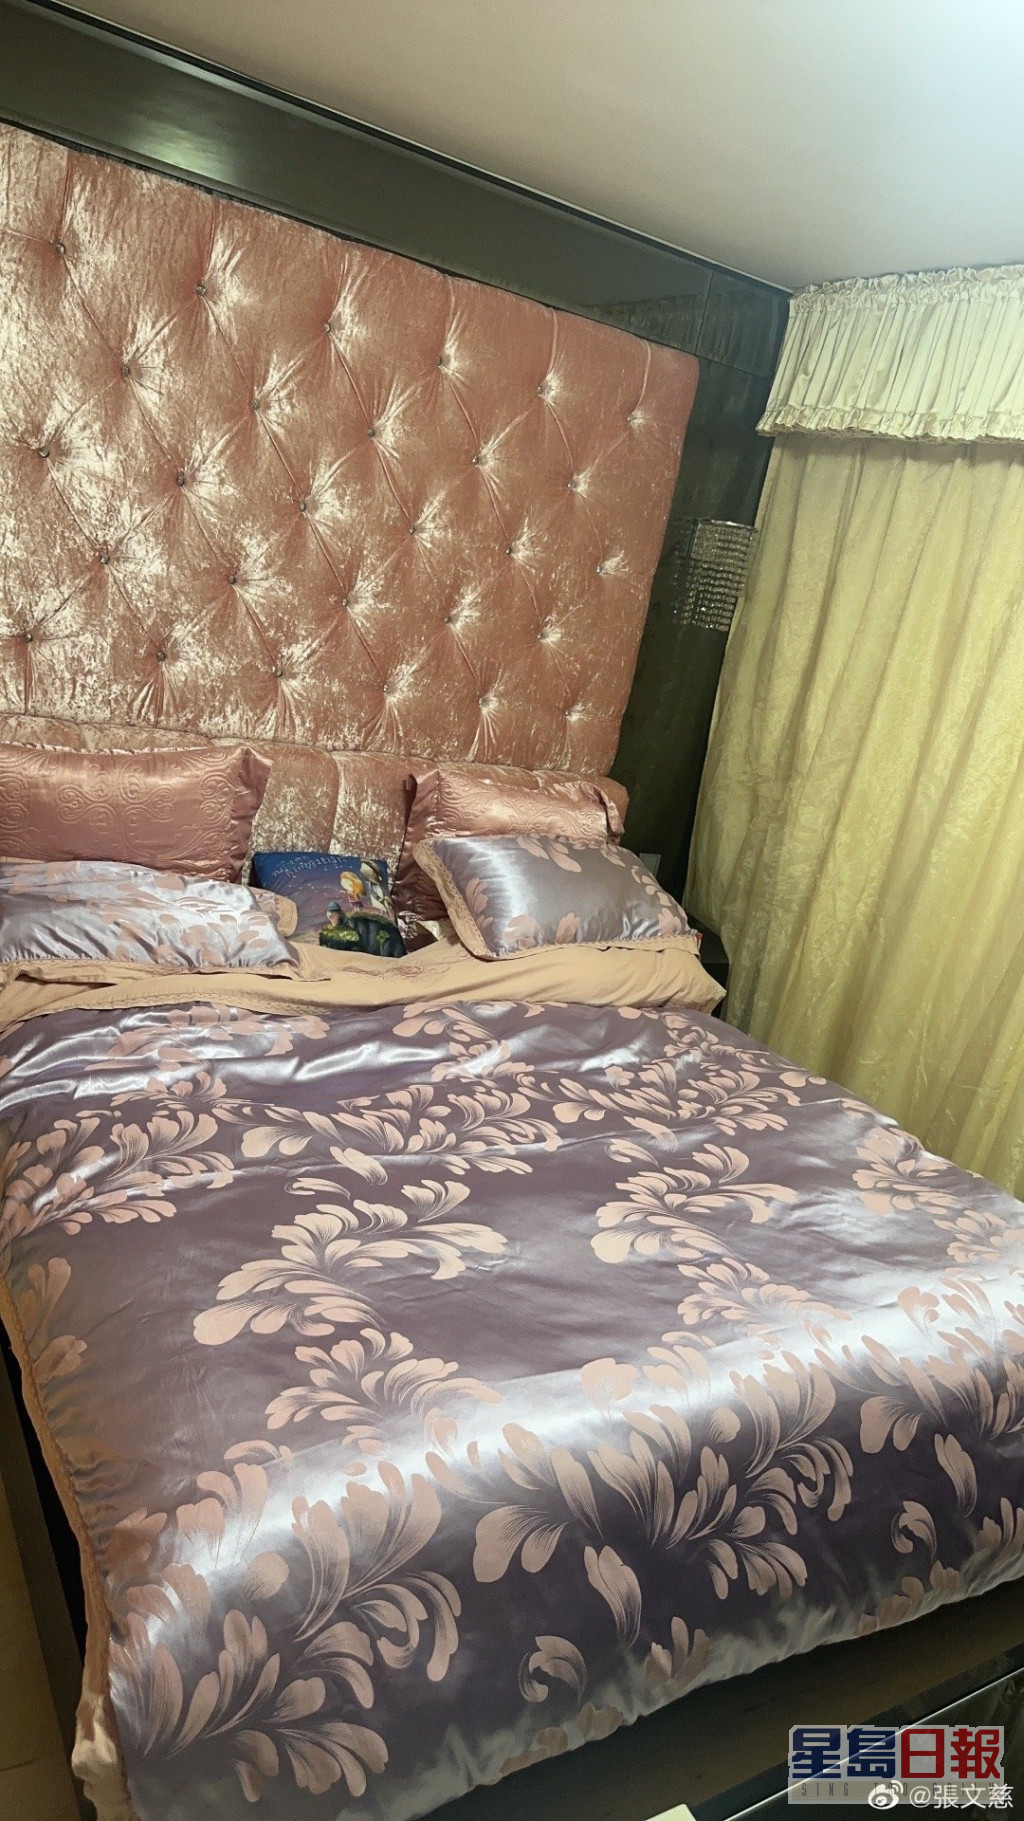 张文慈的睡房品味独特。